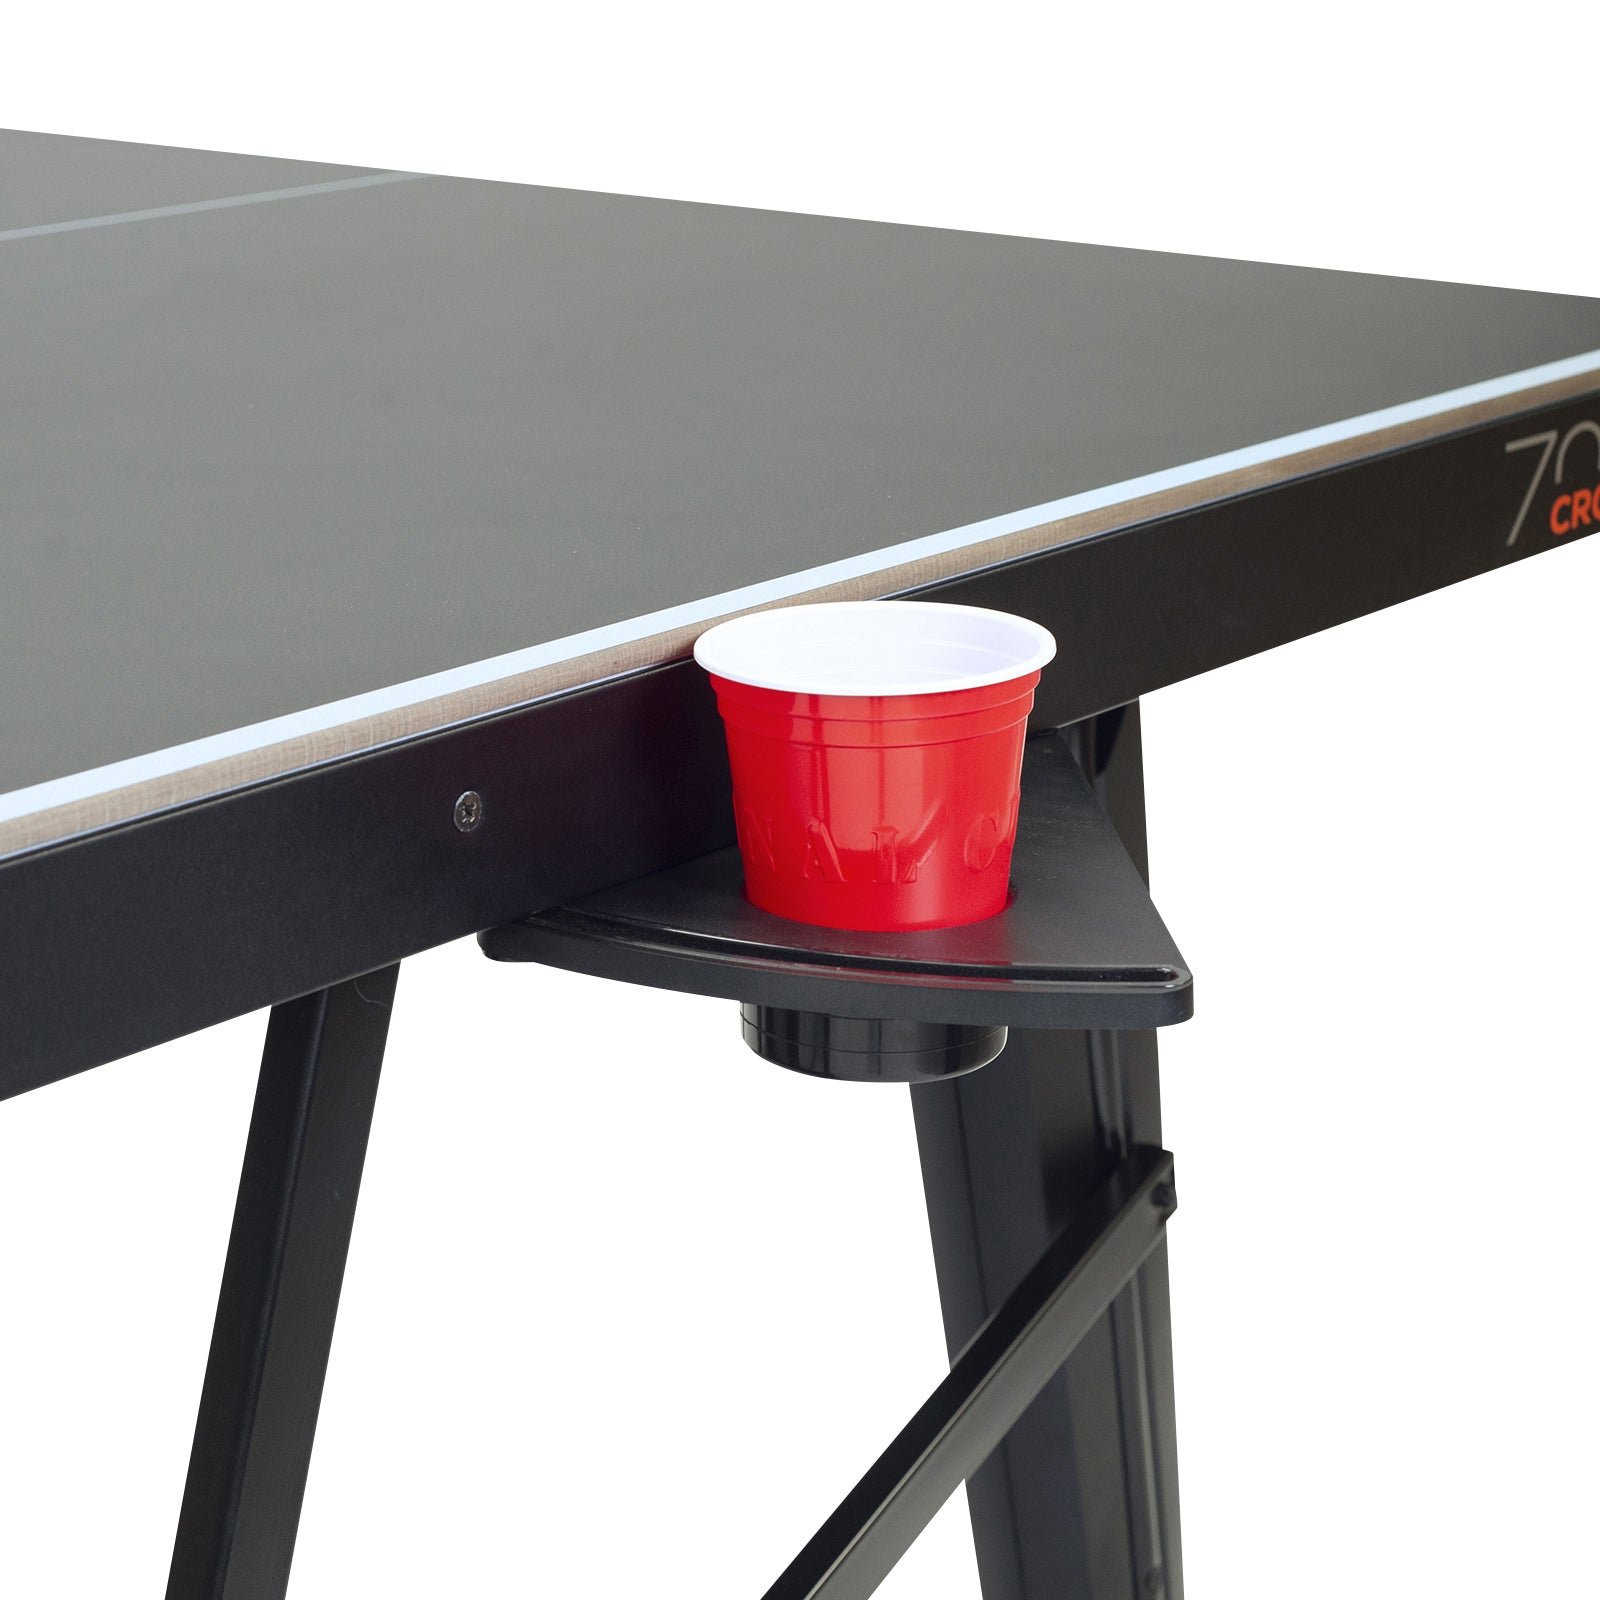 Cornilleau Sport 700X Outdoor Rollaway Table Tennis